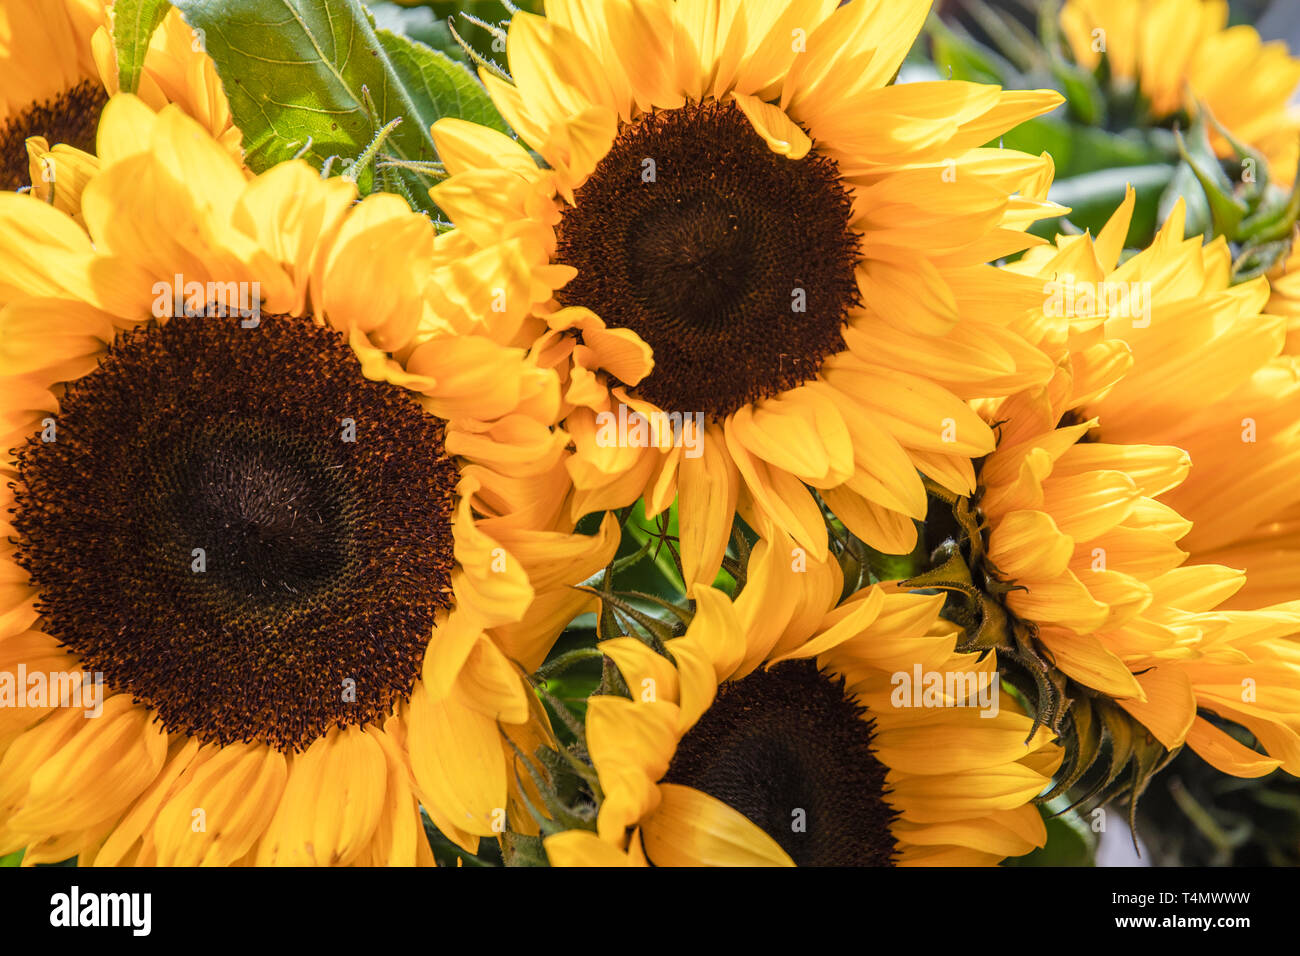 Sunflowers, Sonnenblumen Stock Photo